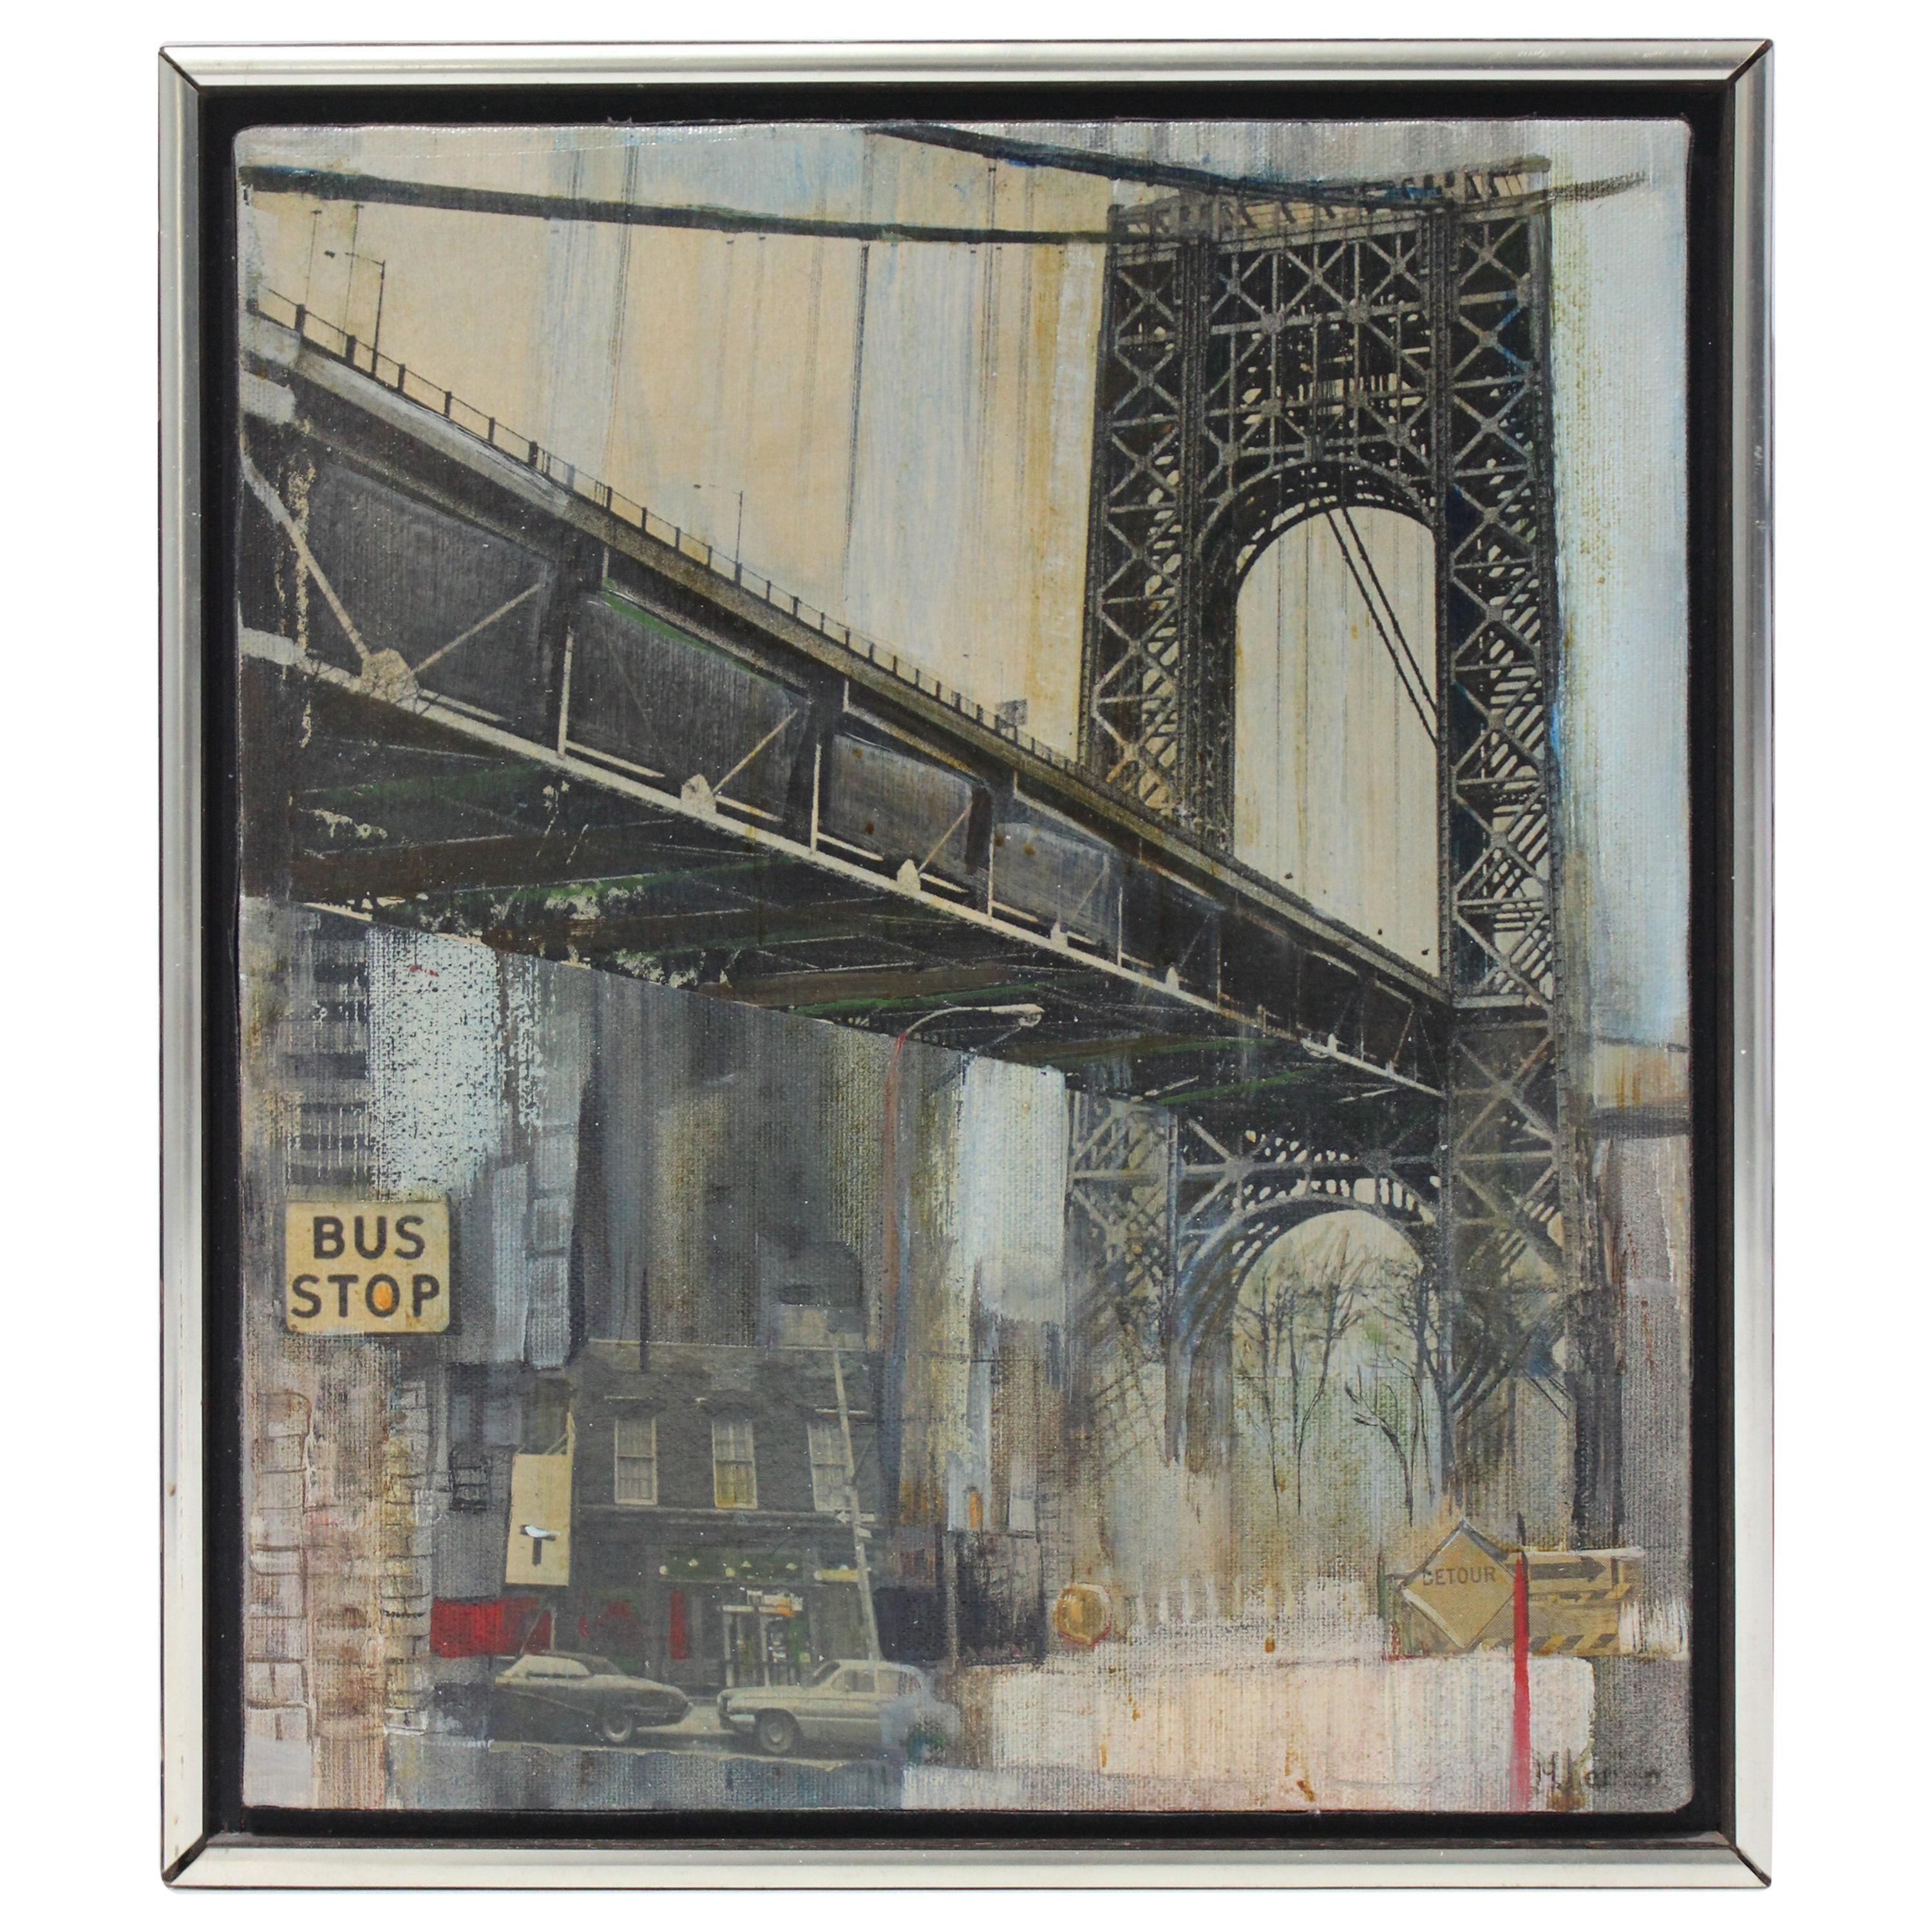 Gemälde der Manhattan Bridge, Öl auf Leinwand, von M. Kaplan